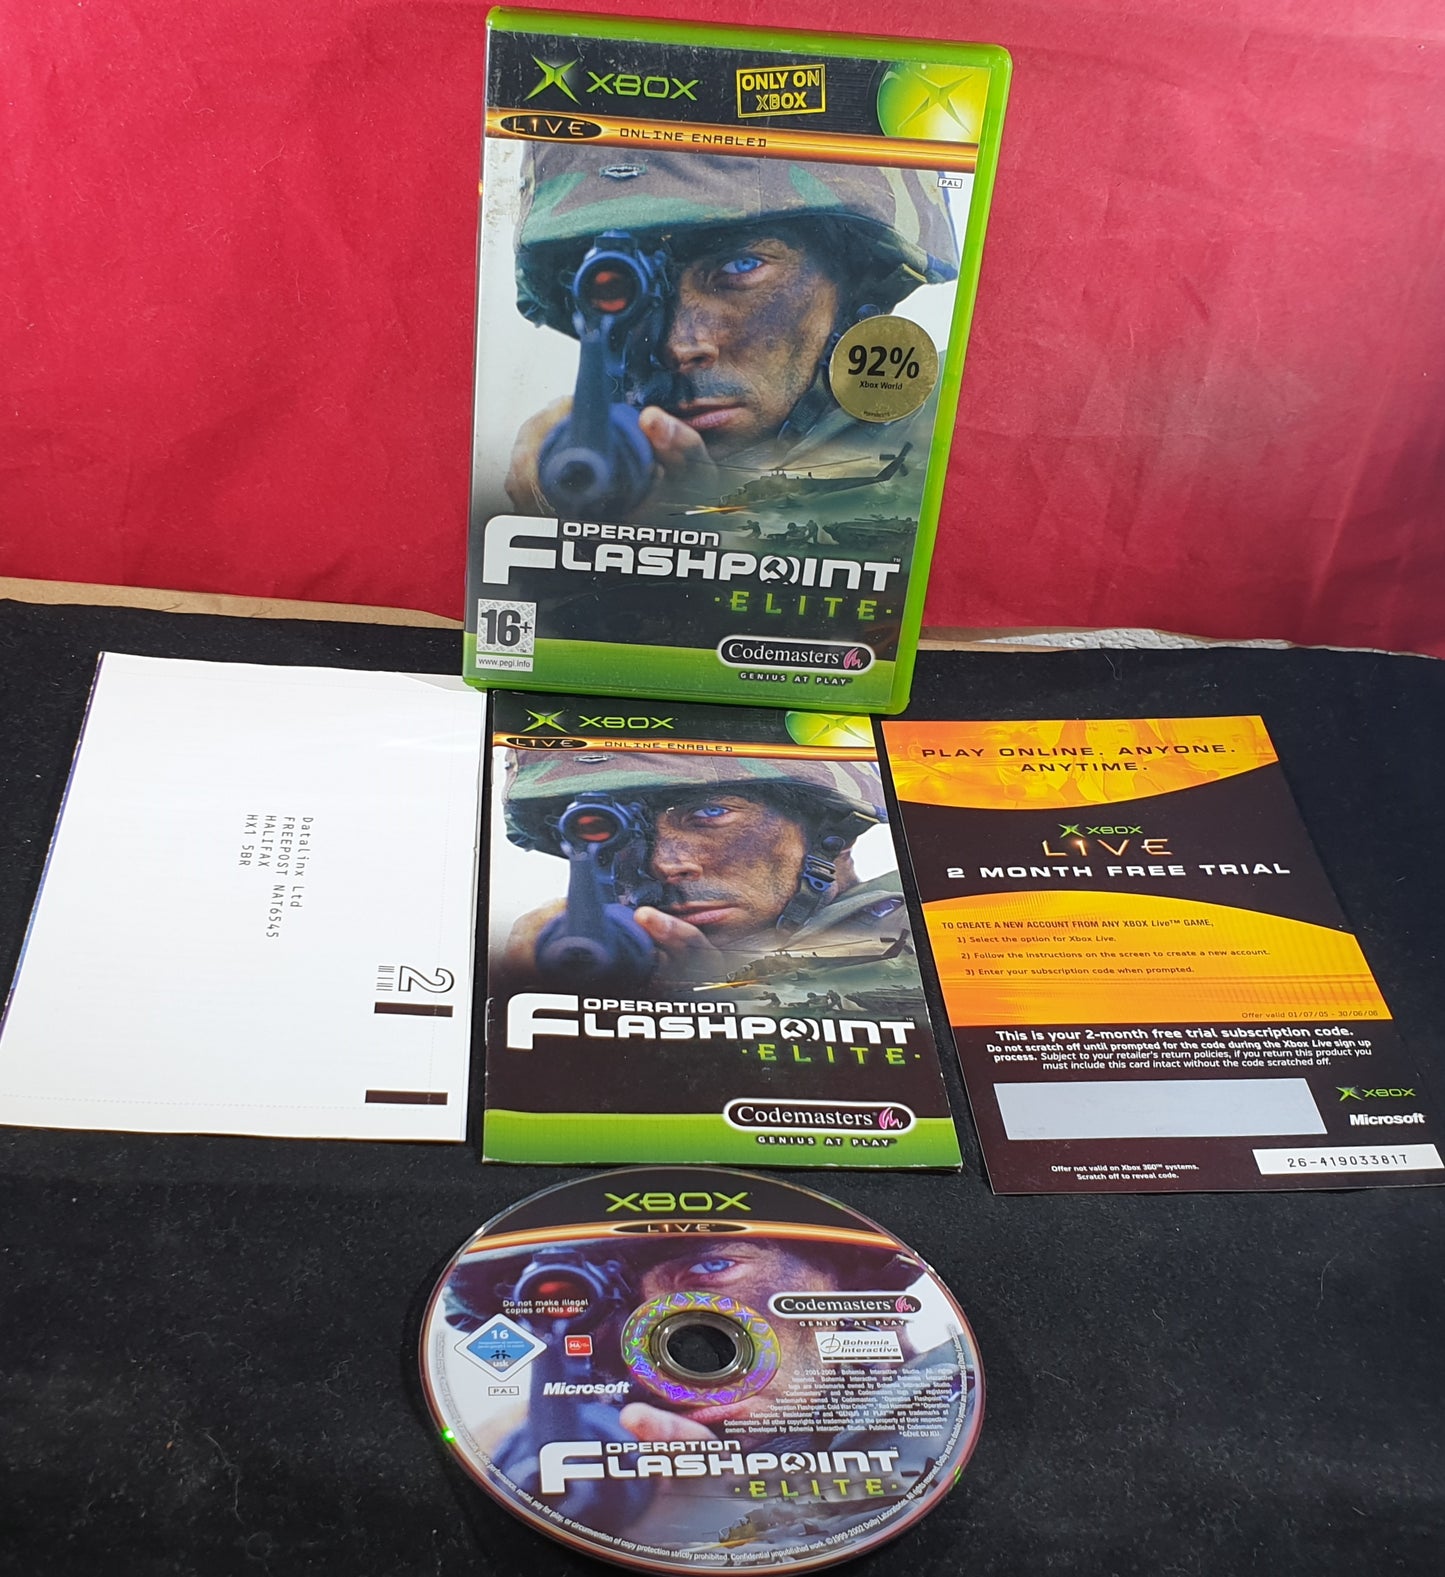 Operation Flashpoint Elite Microsoft Xbox Game